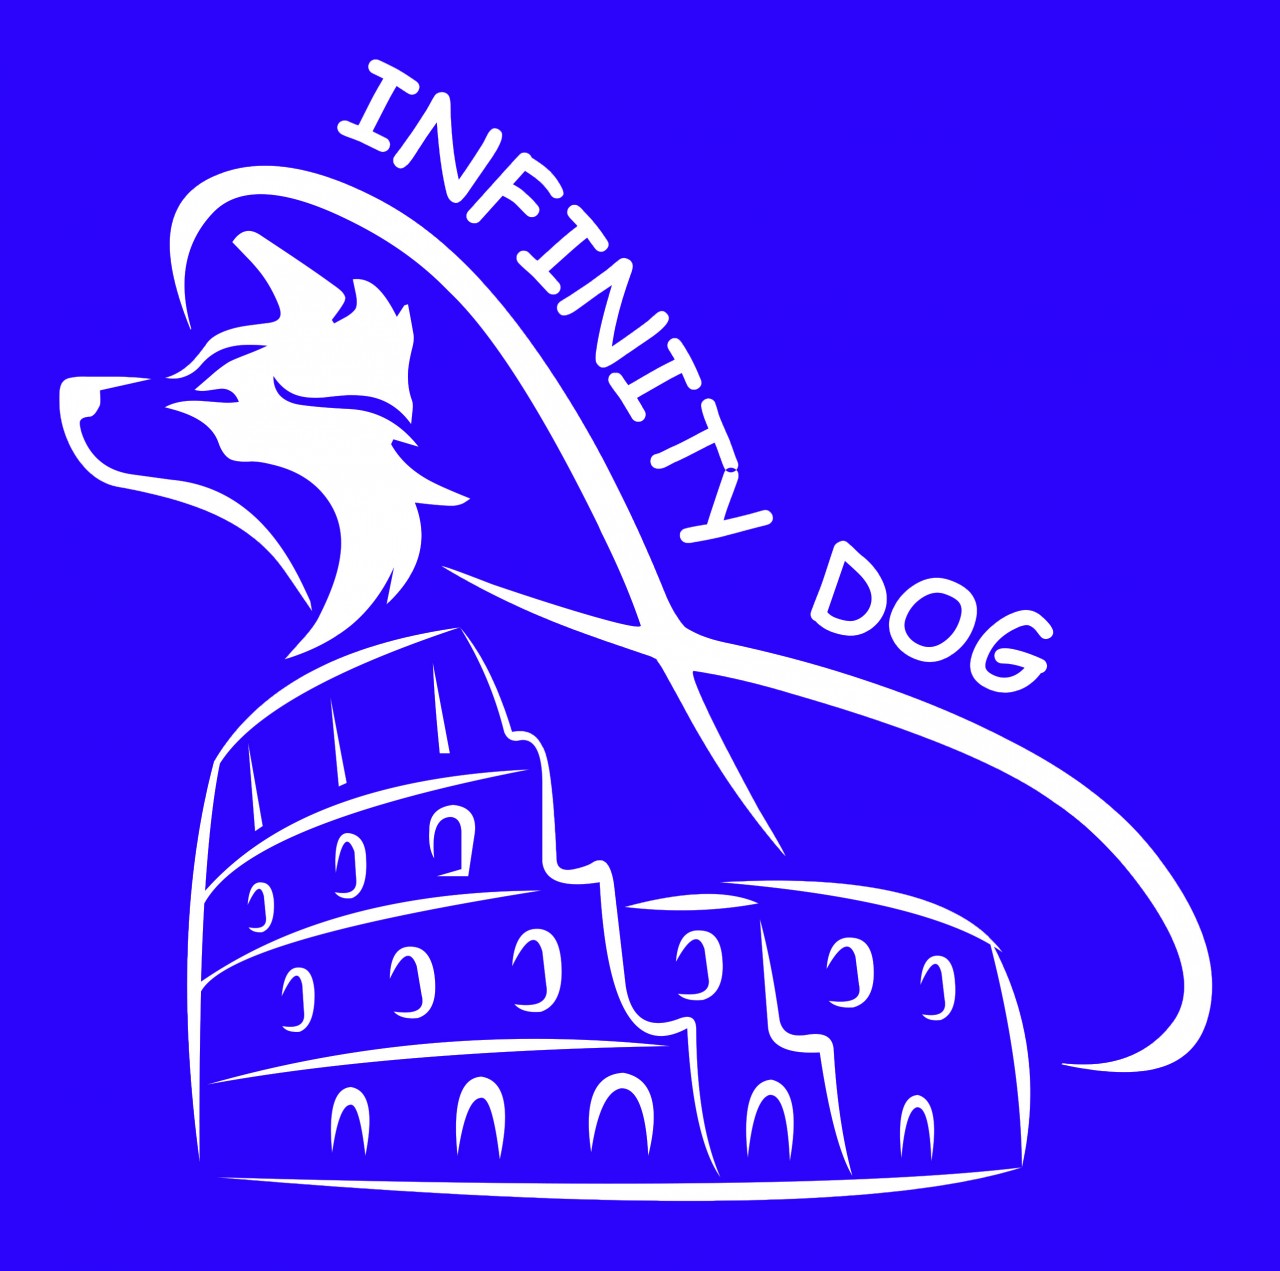 Infinity Dog Roma Asd